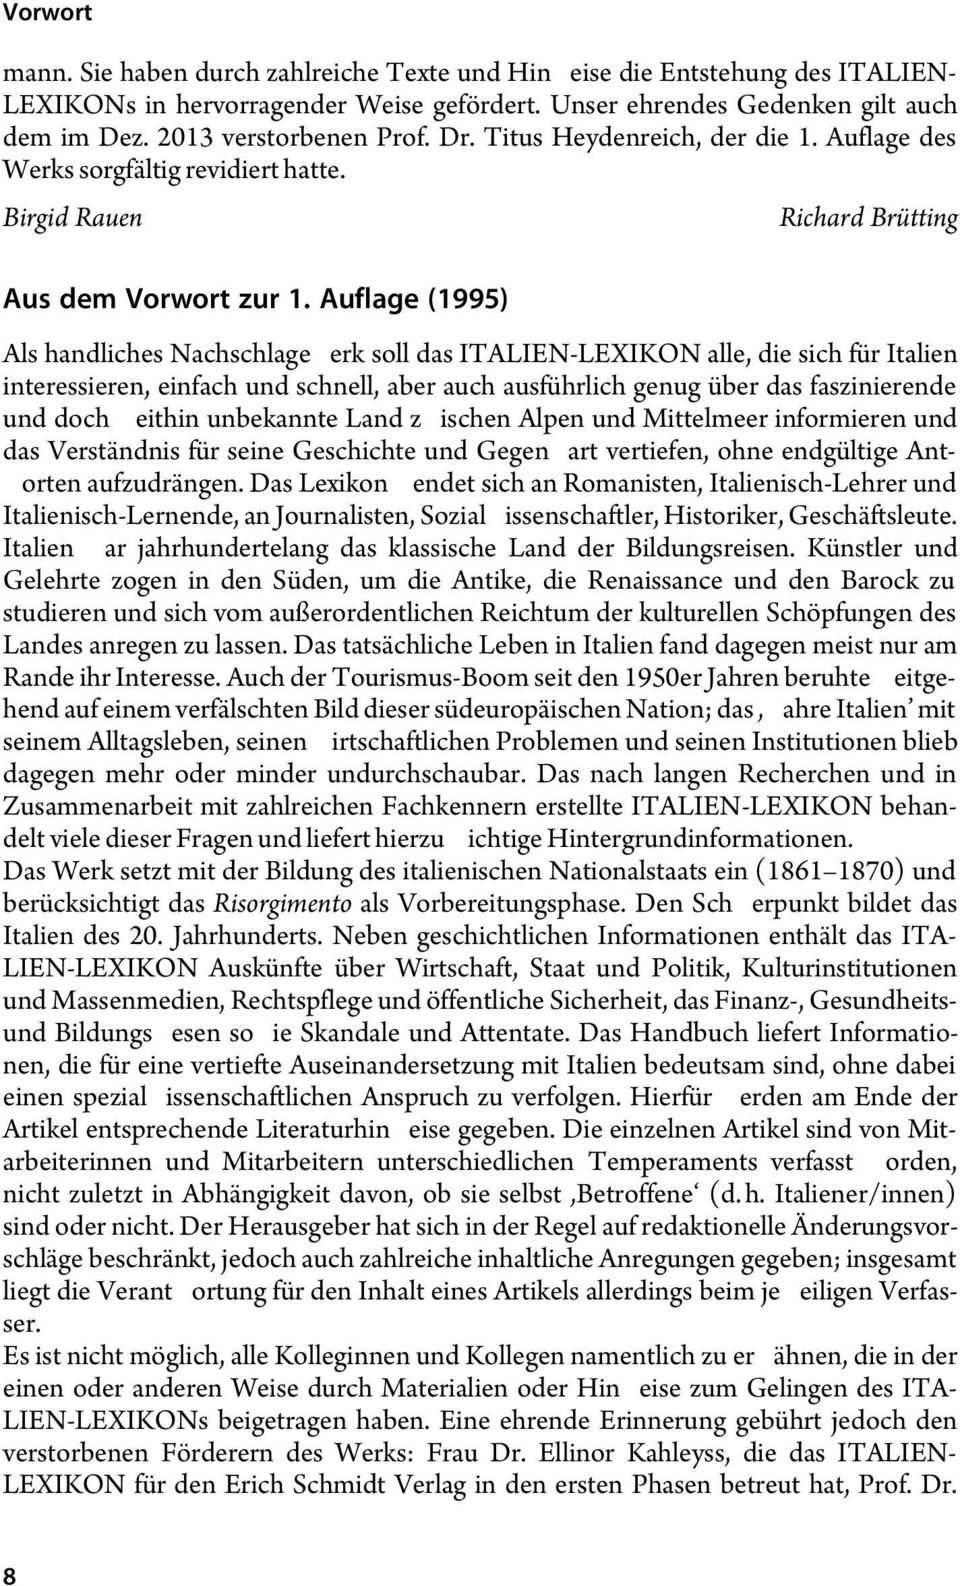 Auflage (1995) Richard Brütting Als handliches Nachschlagewerk soll das ITALIEN-LEXIKON alle, die sich für Italien interessieren, einfach und schnell, aber auch ausführlich genug über das